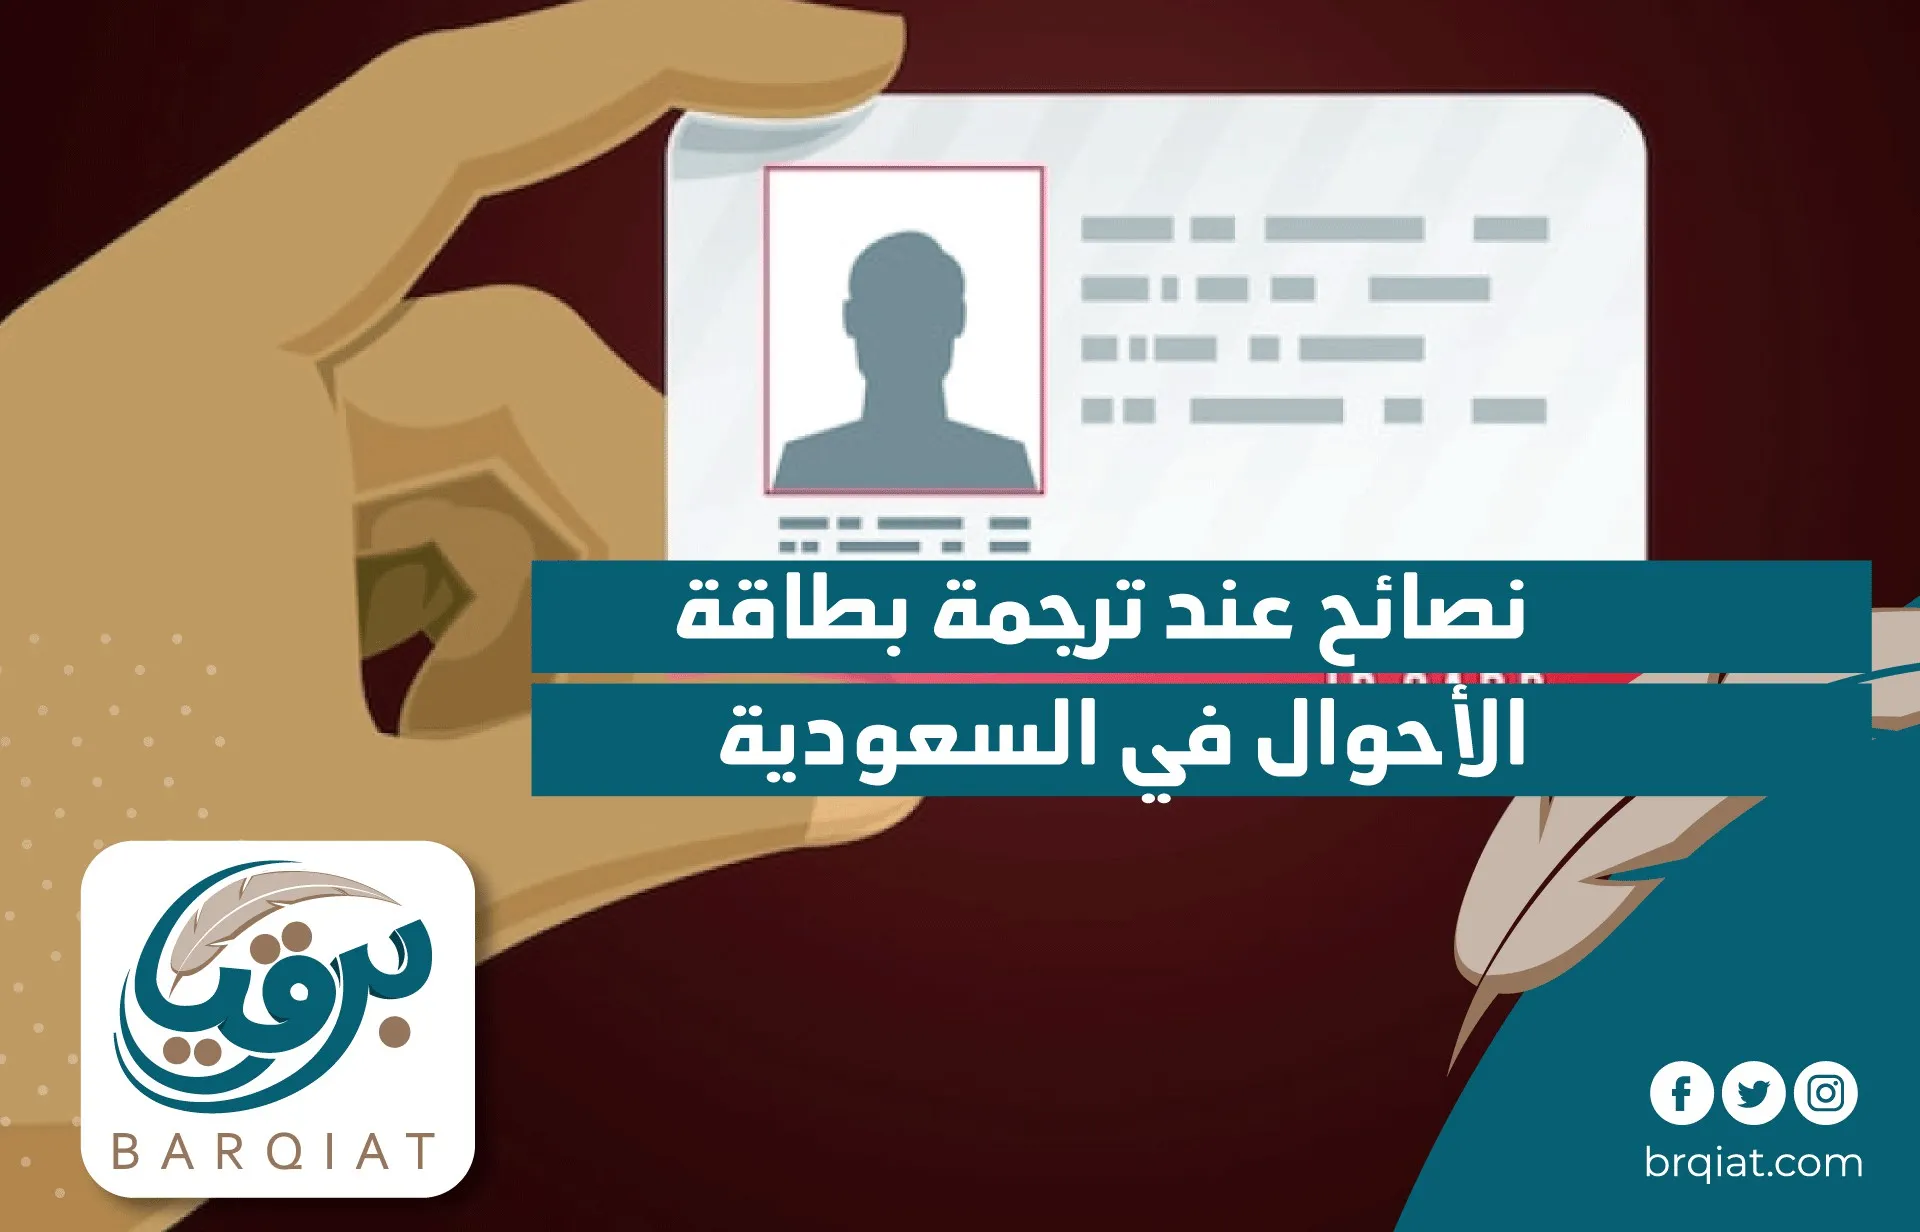 "نصائح عند ترجمة بطاقة الأحوال في السعودية"